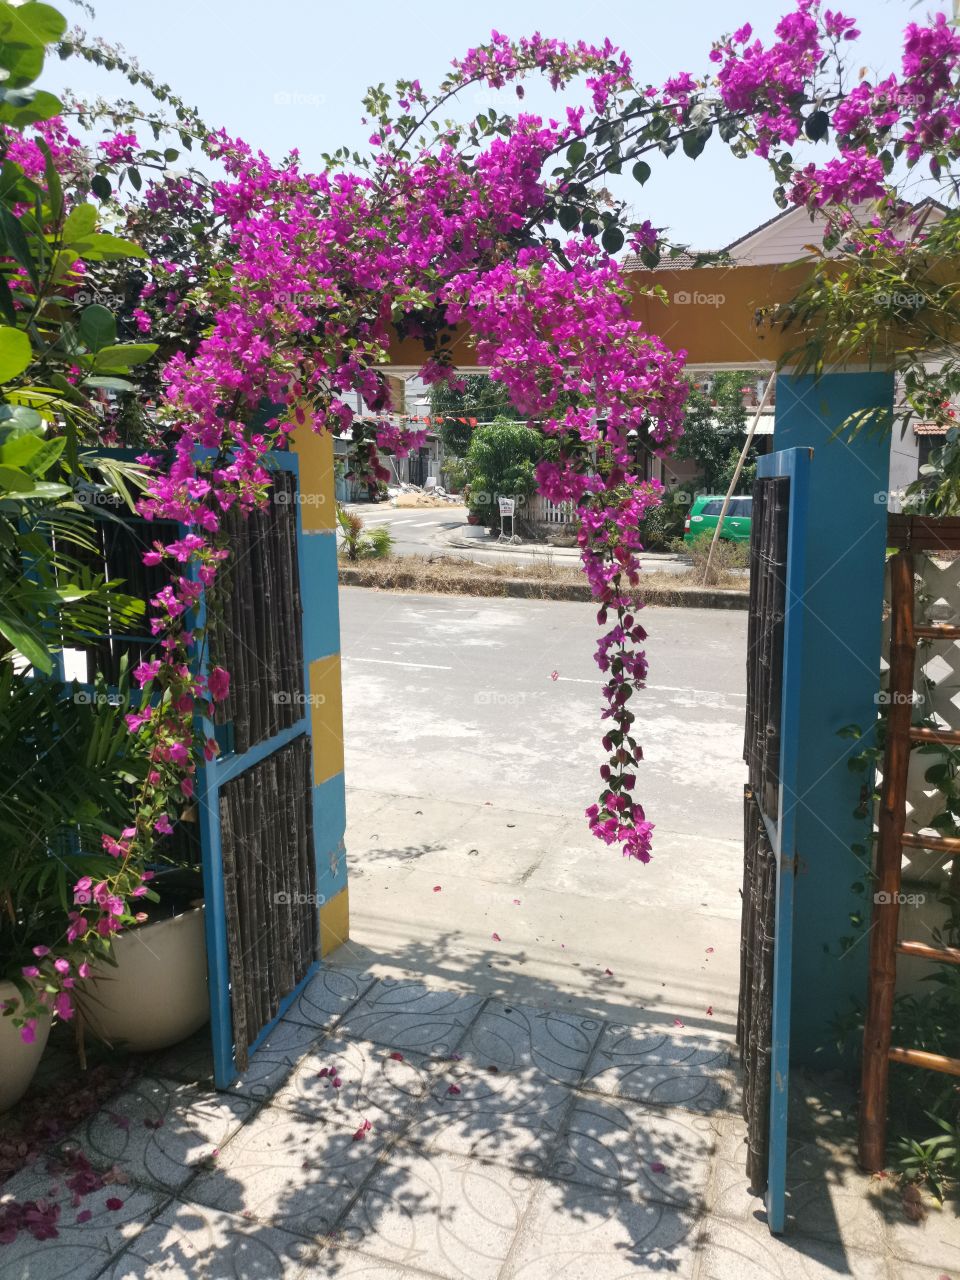 Purple flower hanging over doorway